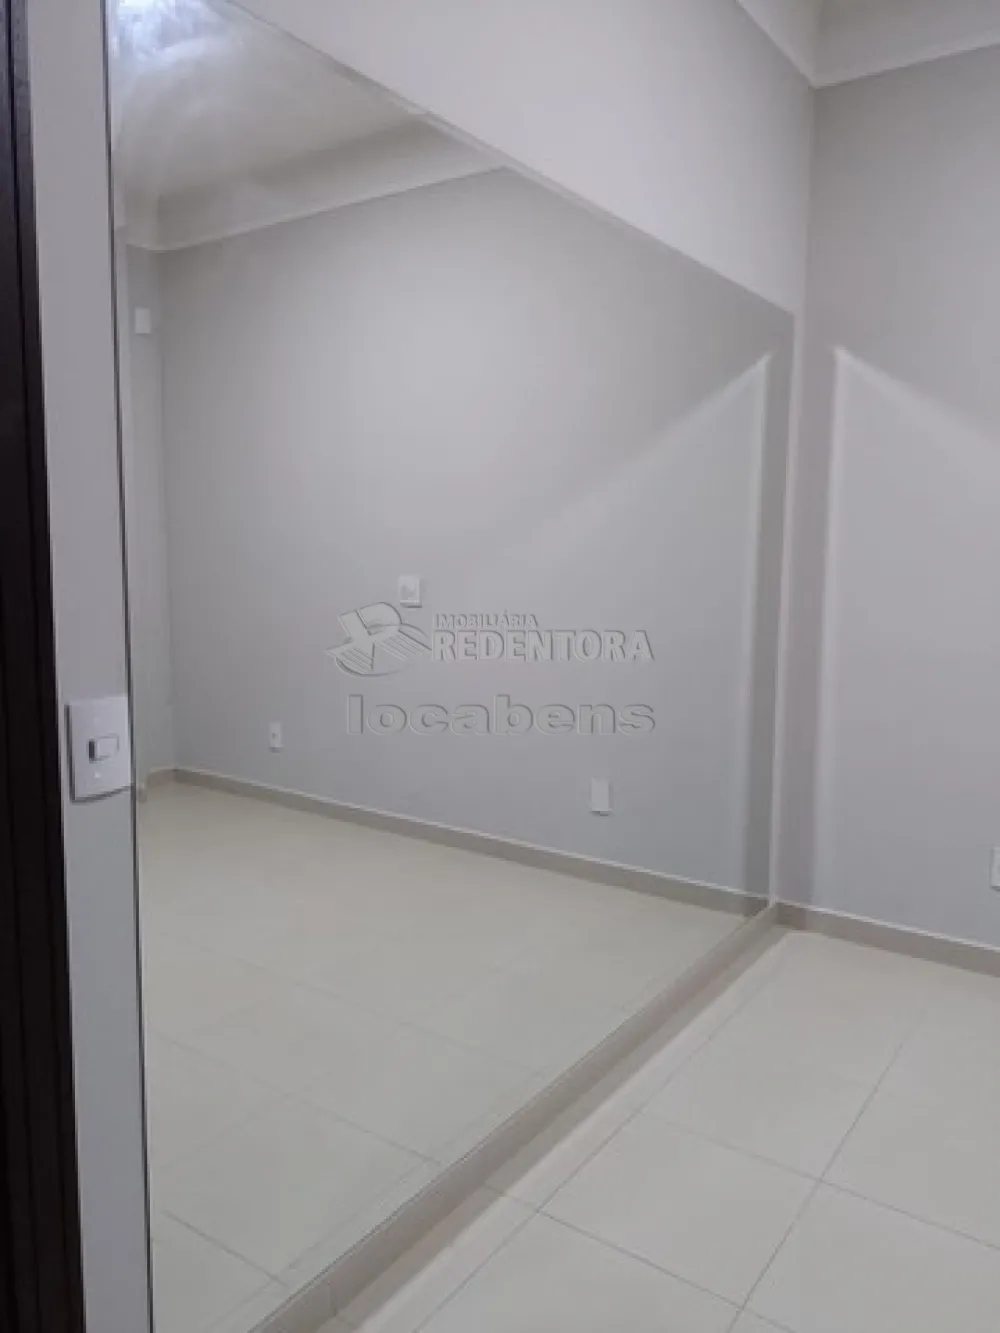 Alugar Casa / Condomínio em São José do Rio Preto apenas R$ 7.000,00 - Foto 4